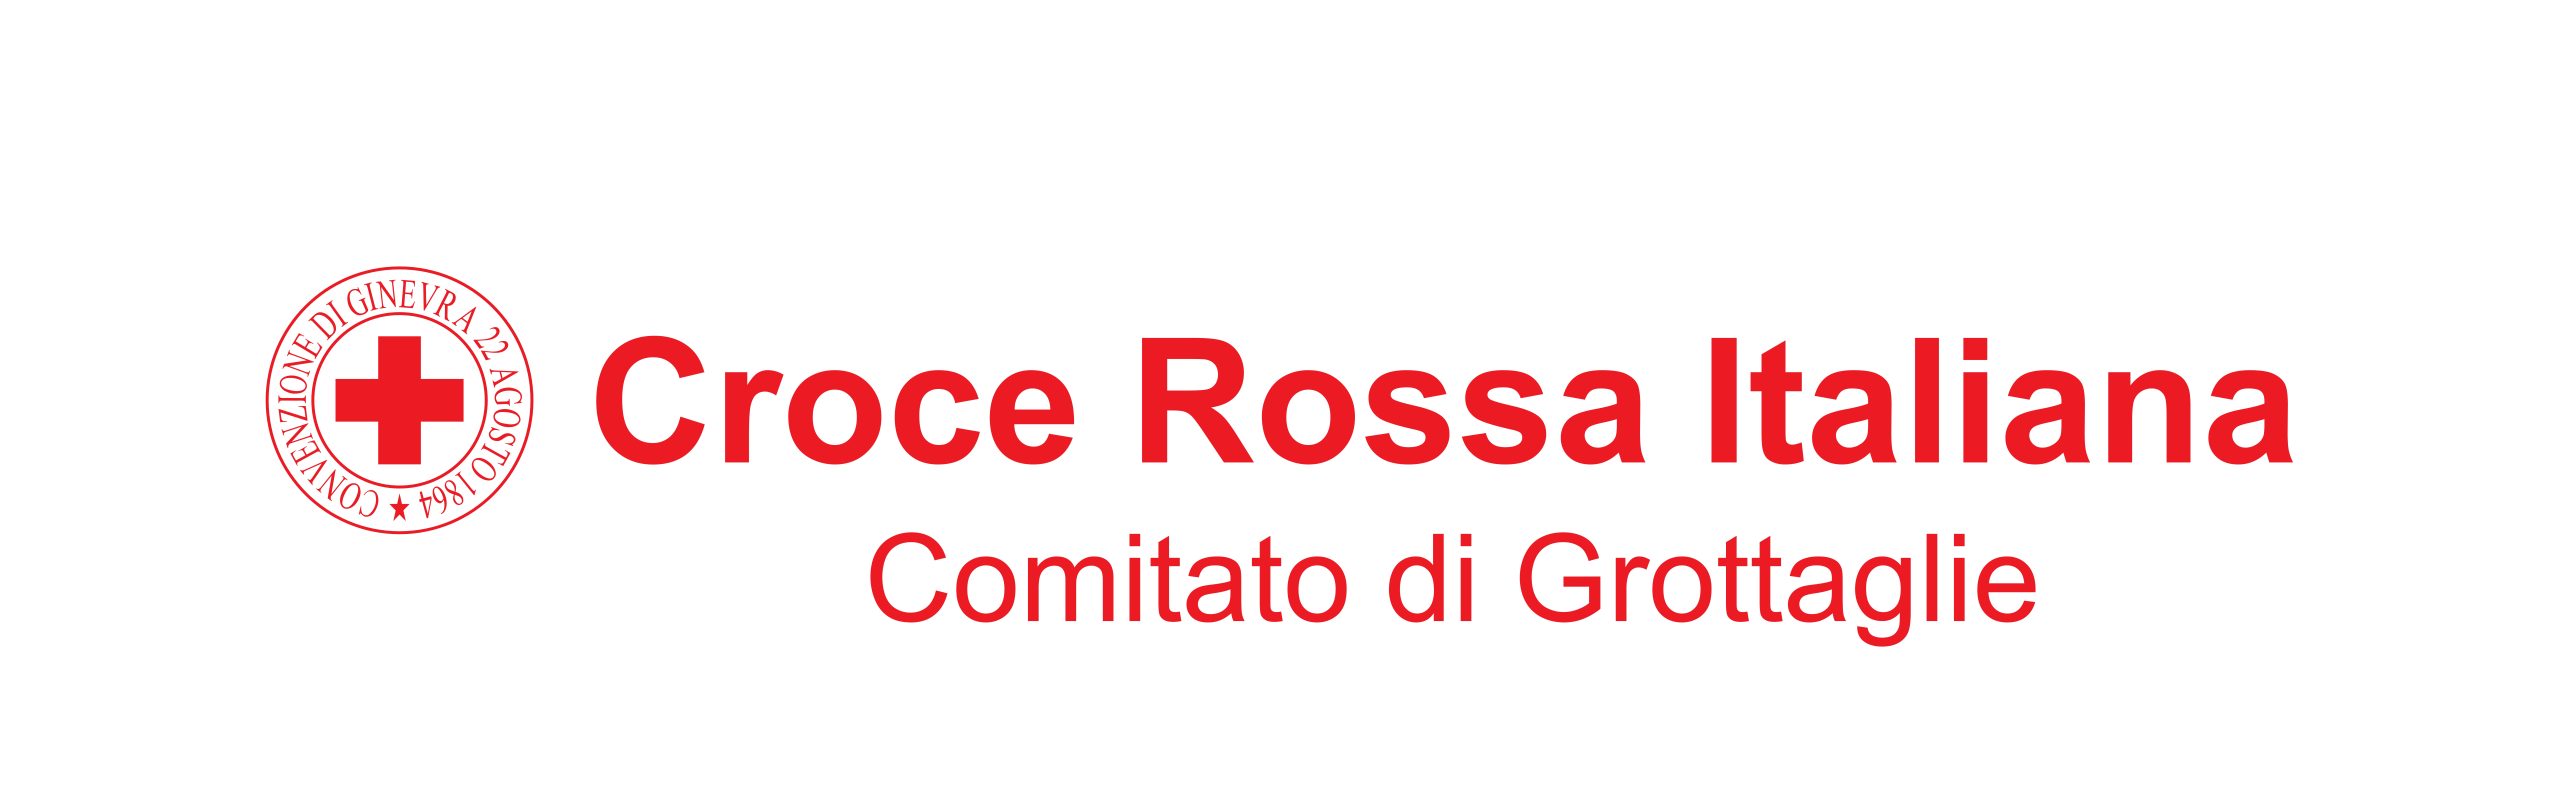 Croce Rossa Italiana - Comitato di Grottaglie - ODV